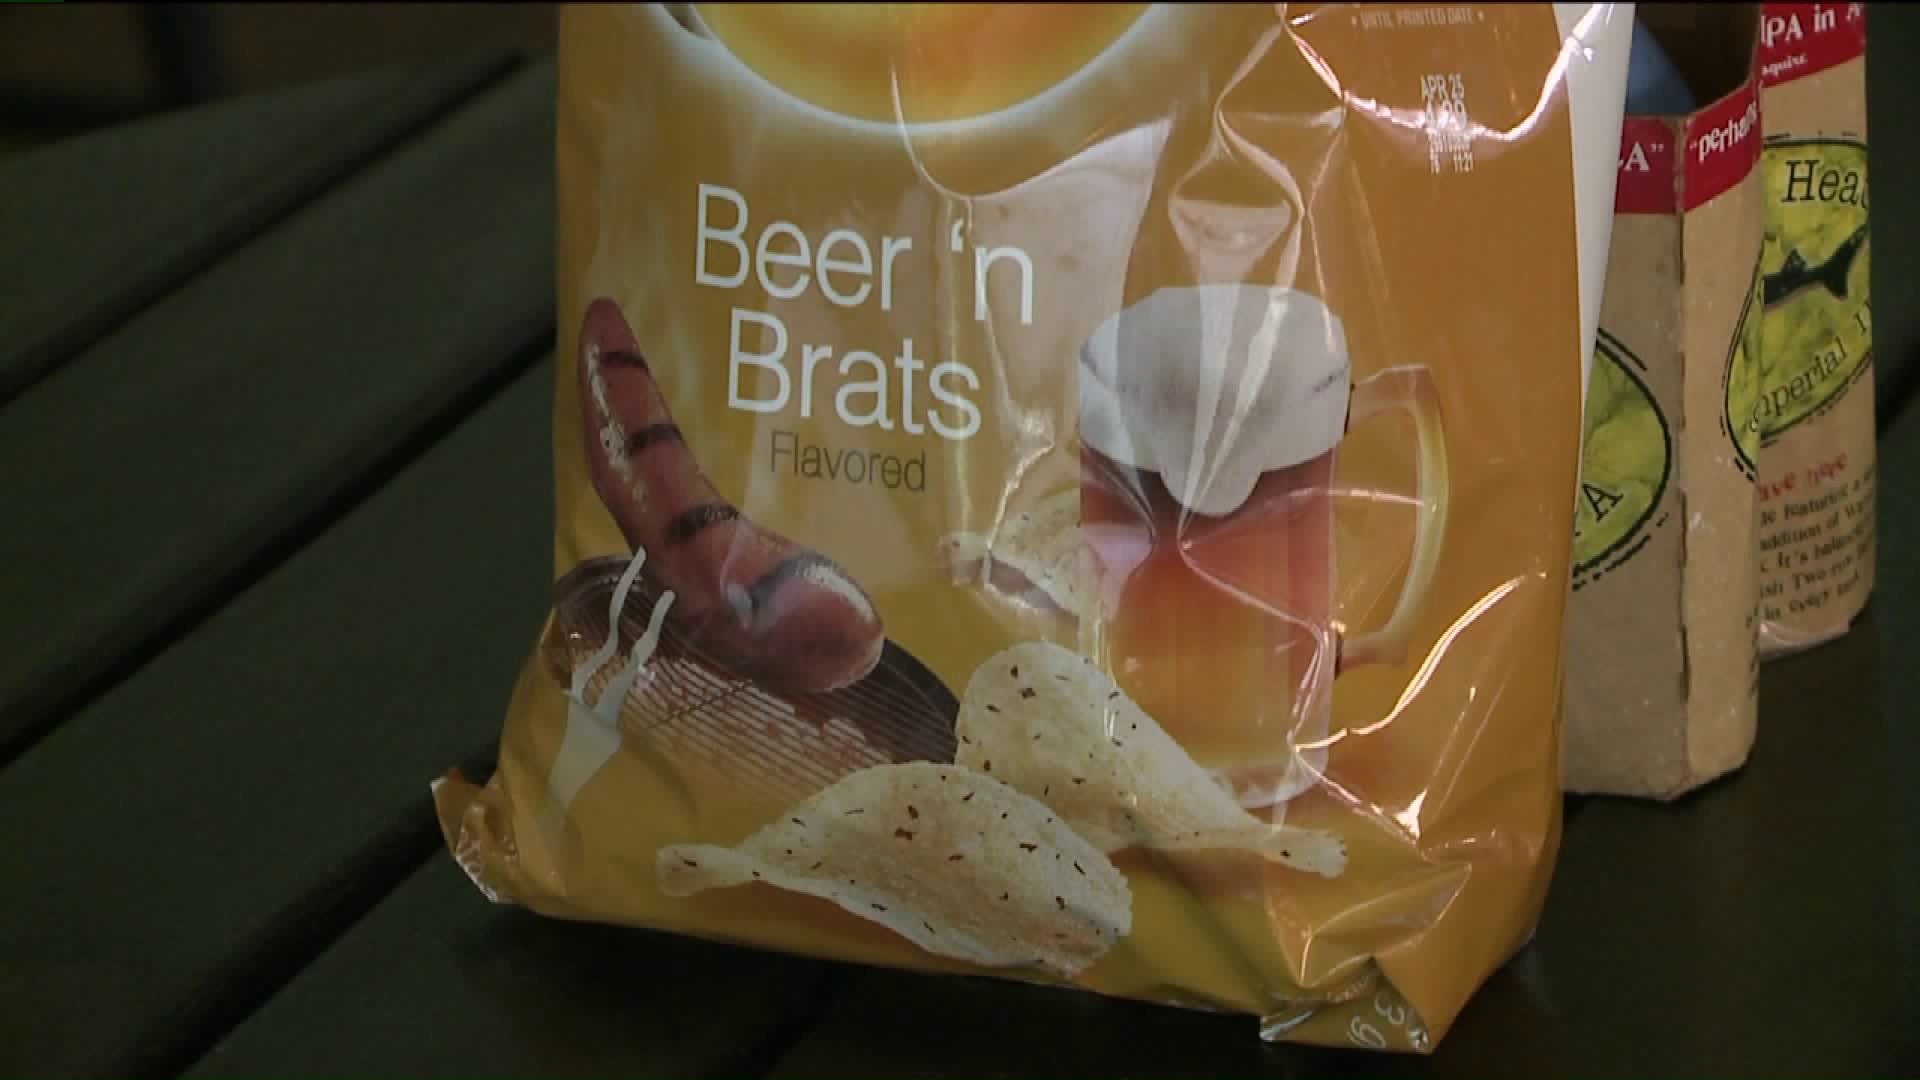 Taste Test: Lay's Beer 'n Brats Chips